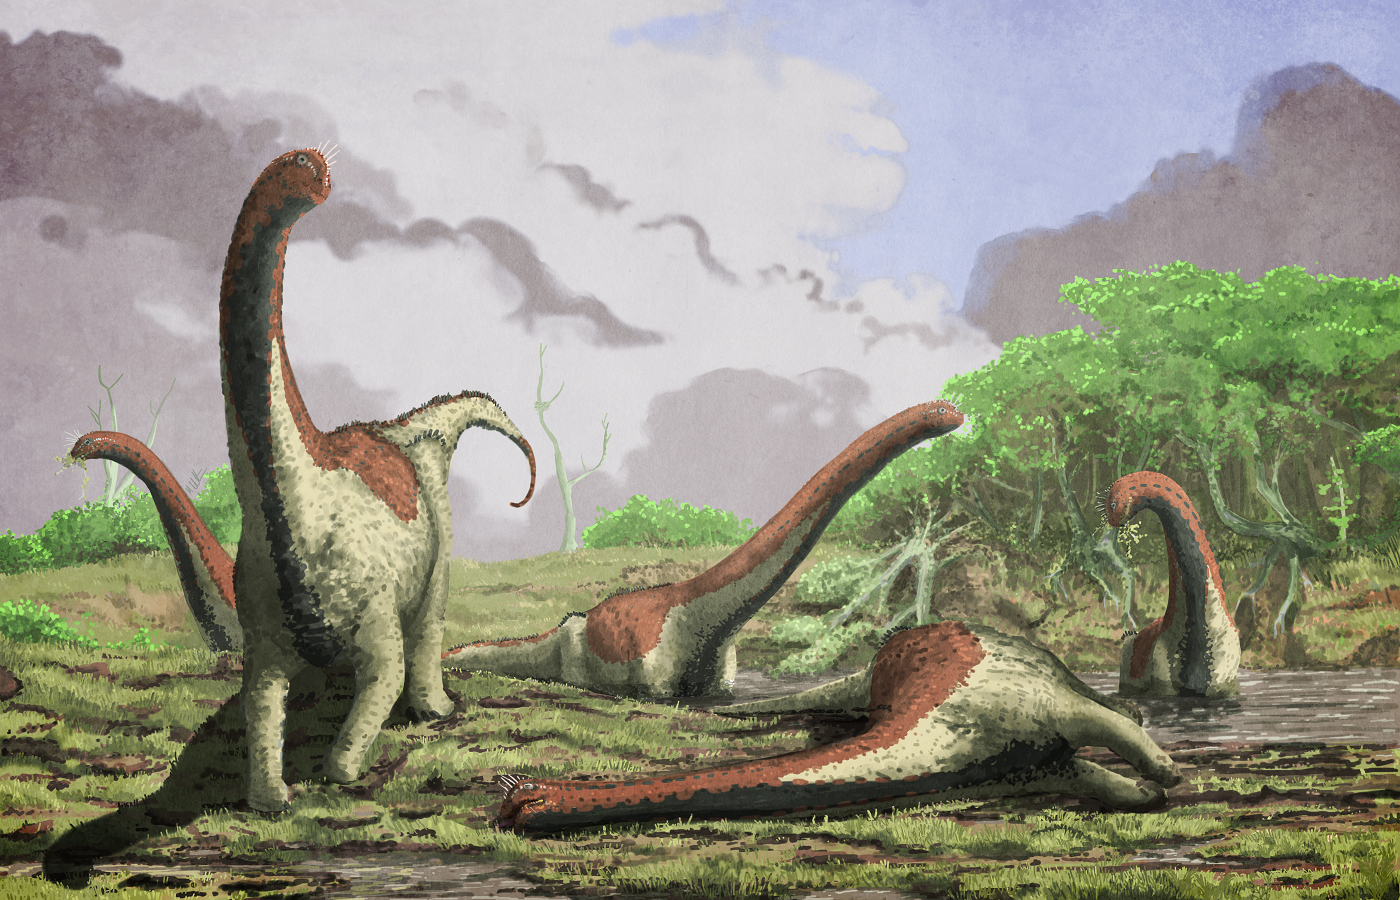 Титанозавр зауропод. Титанозавры титанозавры. Титанозавр зауропод и человек. Вымирание динозавров палеоарт. Древние времена динозавров